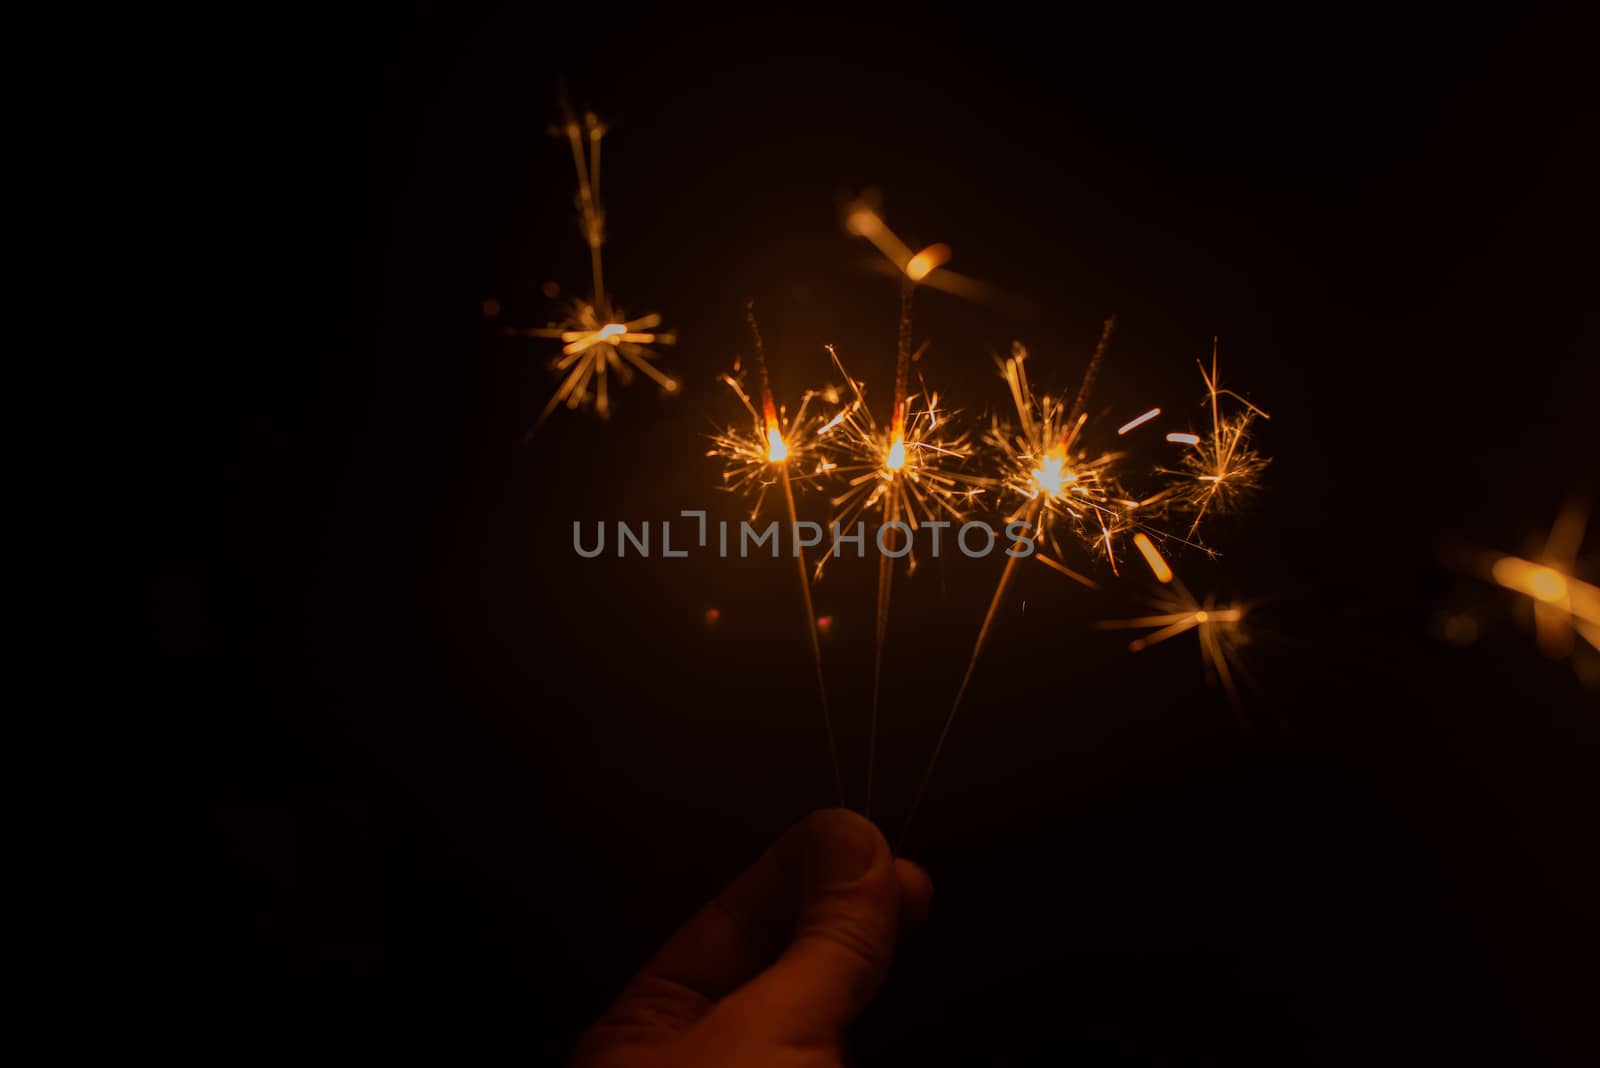 Sparkler fireworks being lit in the dark